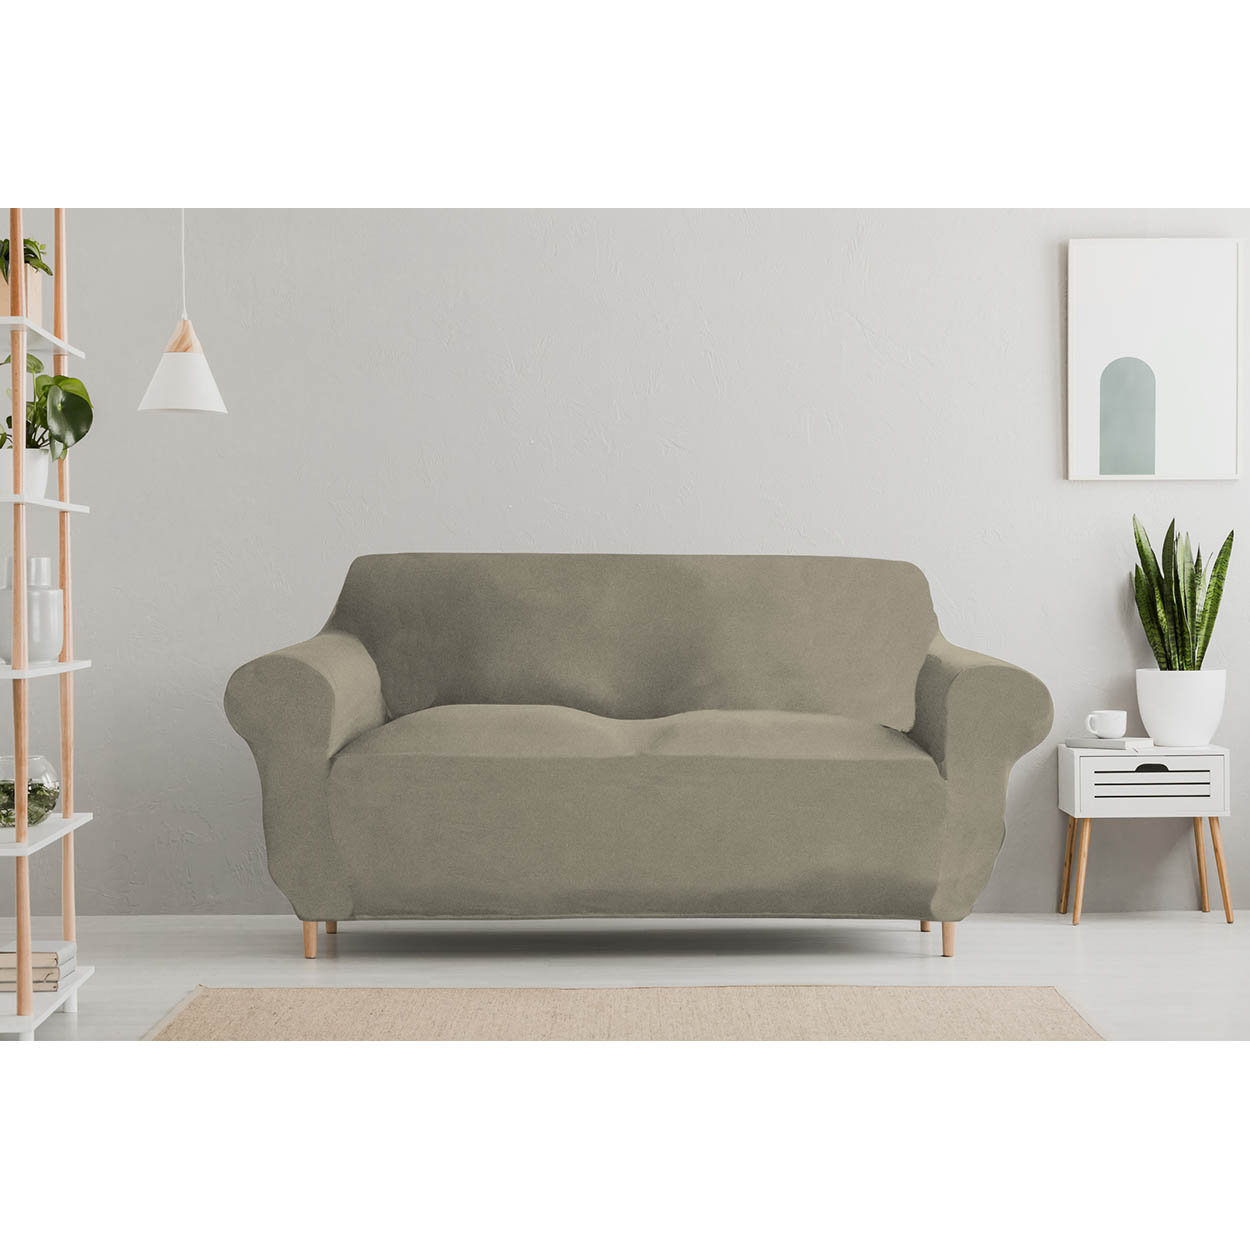 Funda de sofá elástica DAHLIA, color topo - DATEX - Compra en Ventis.